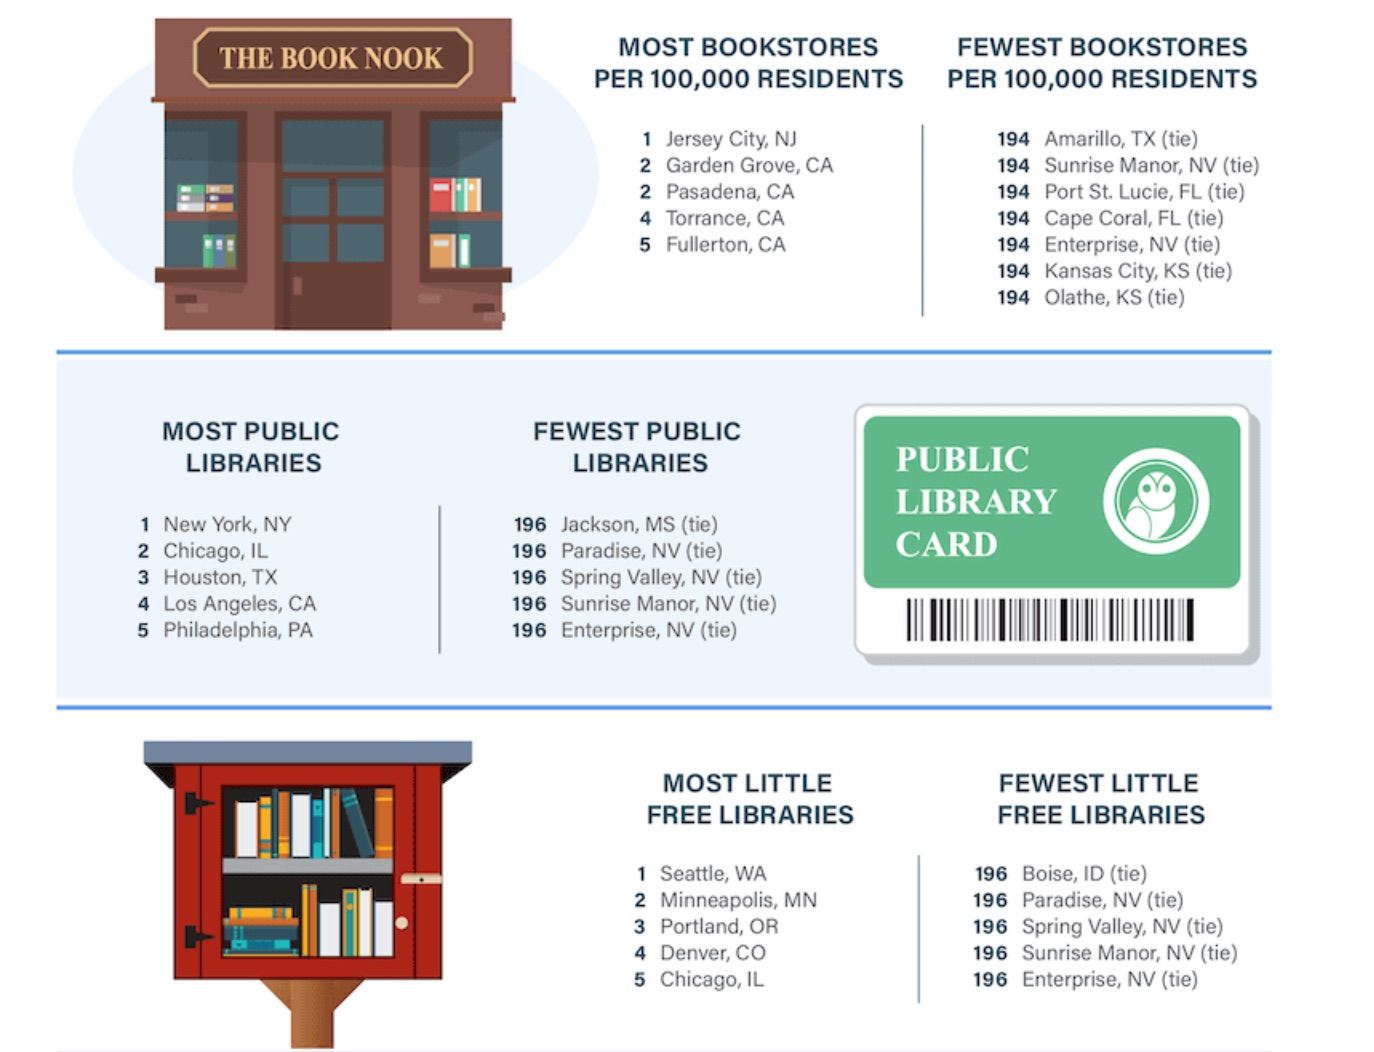 Image de trois graphiques de l'étude, de haut en bas : la plupart et le moins de librairies, la plupart et le moins de bibliothèques publiques, et la plupart et le moins de petites bibliothèques gratuites. 